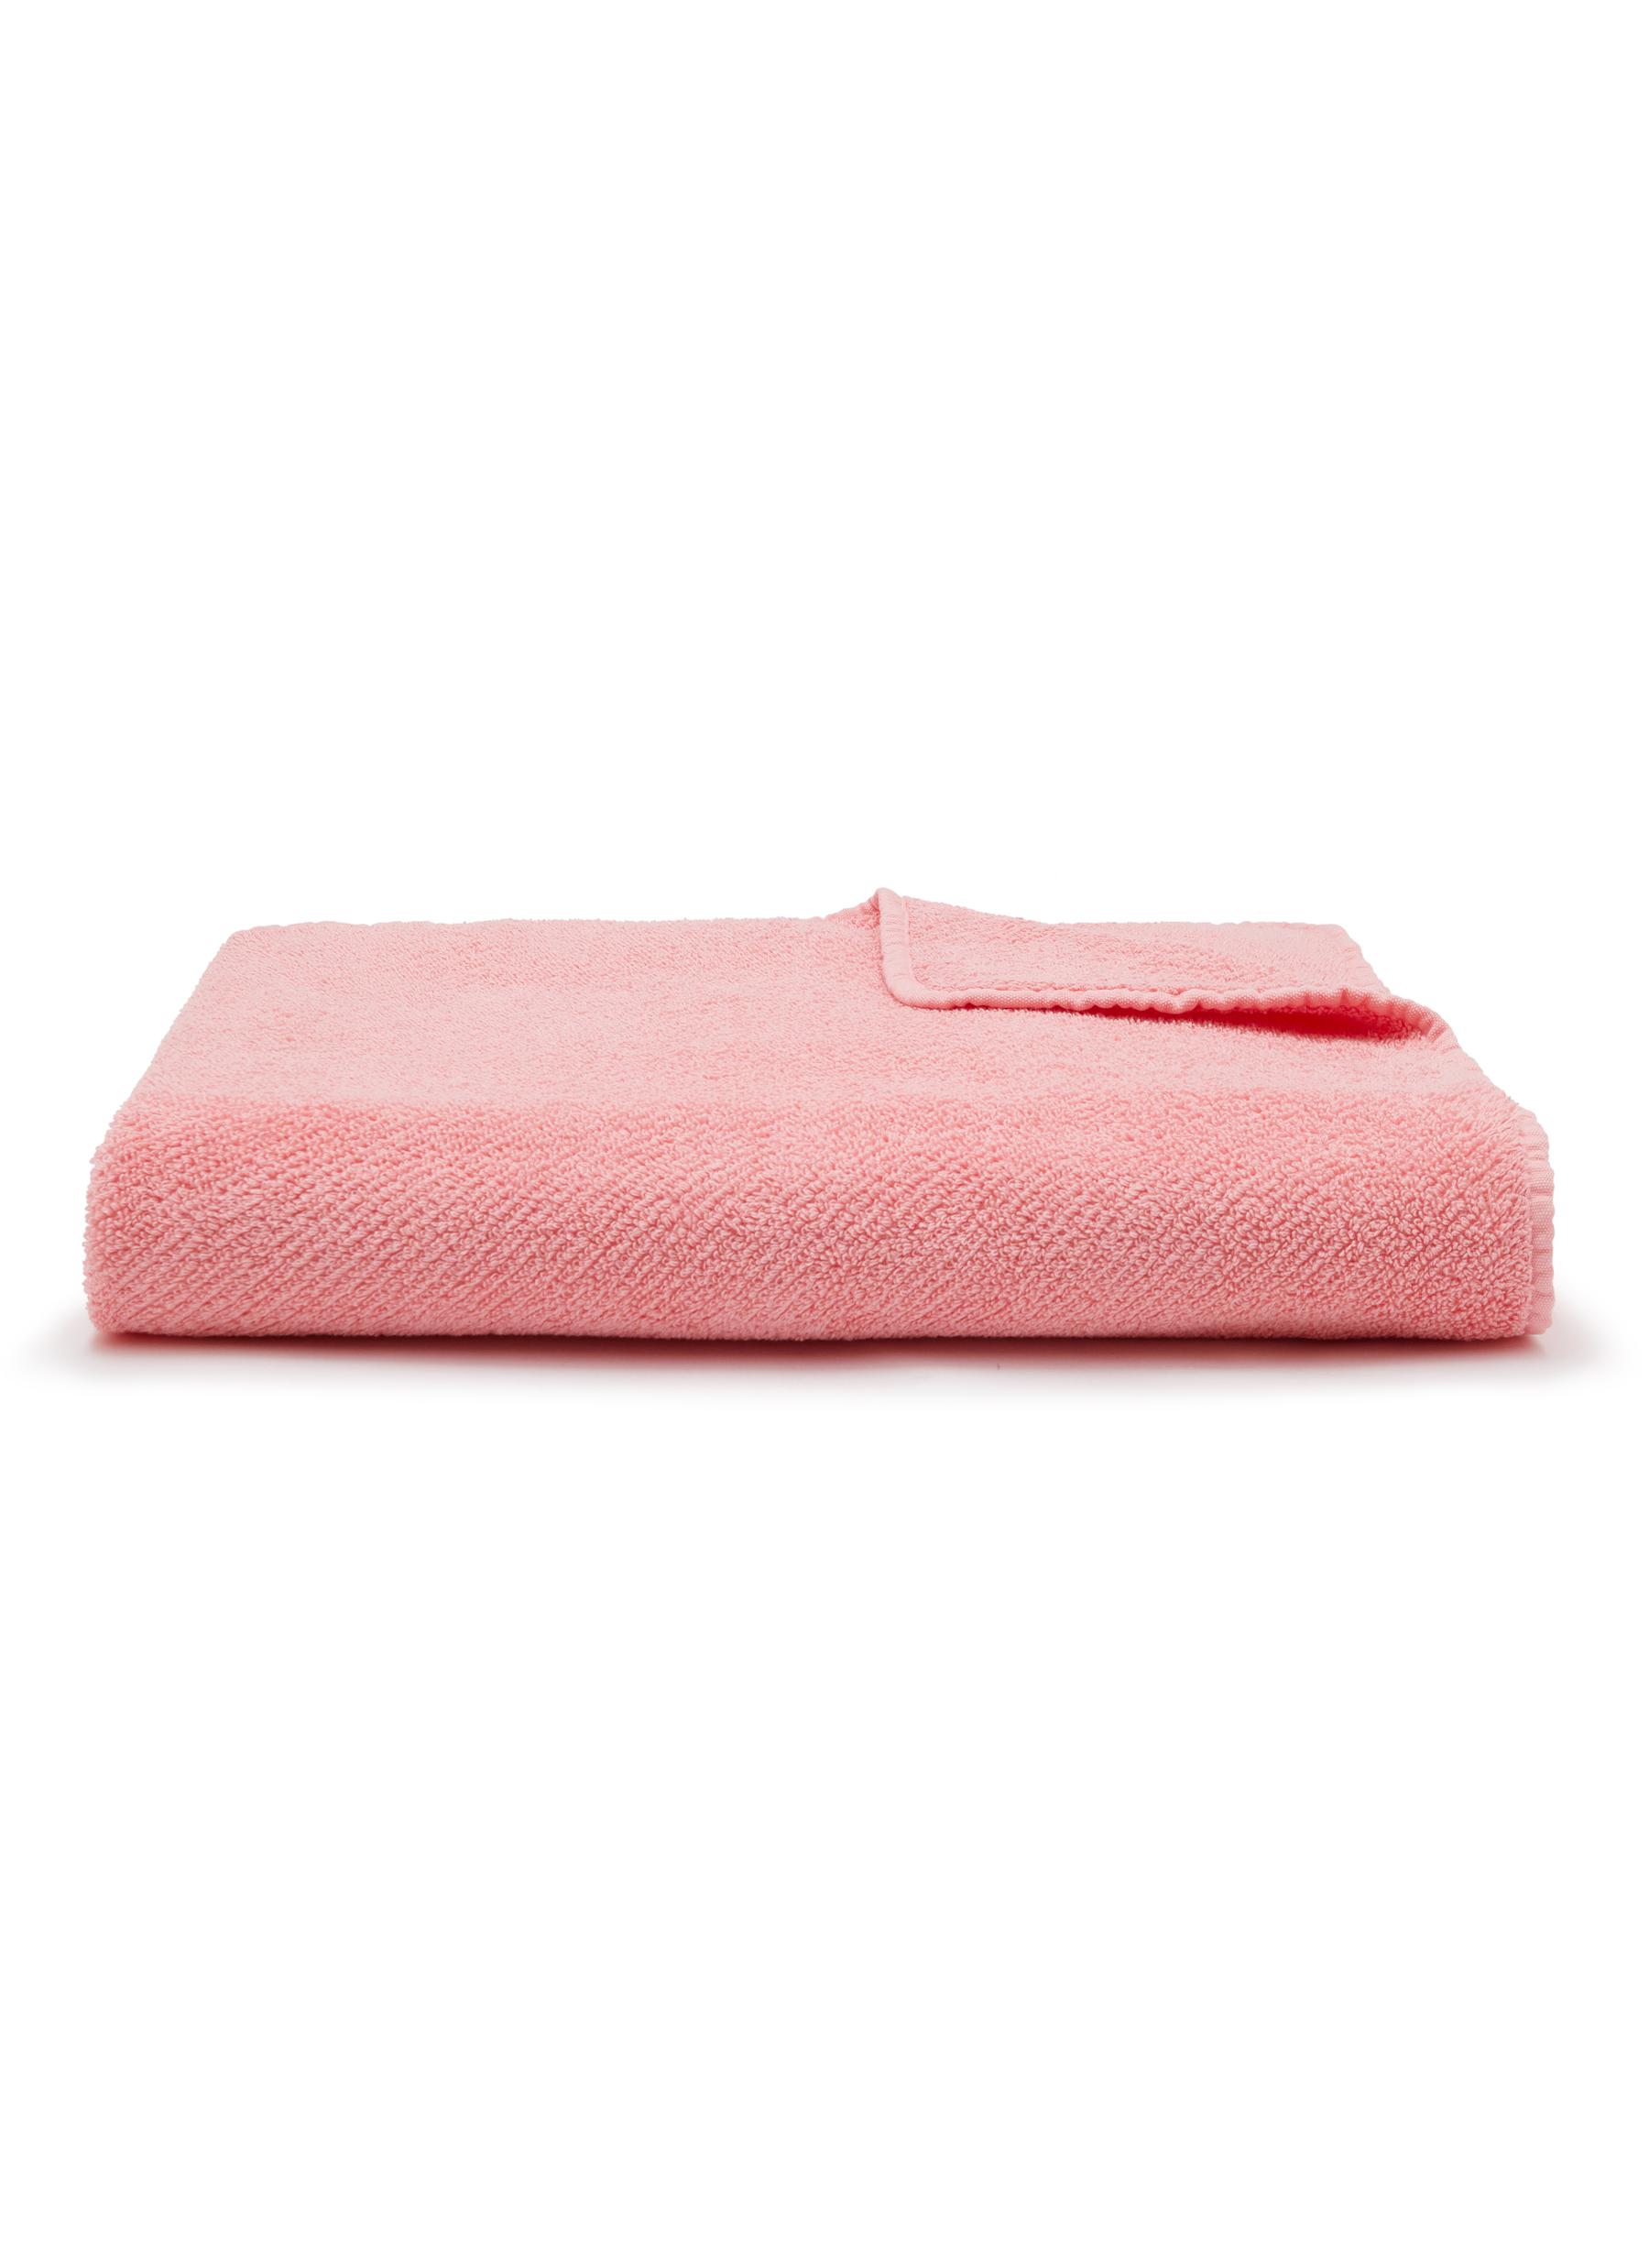 Twill Bath Sheet - Flamingo